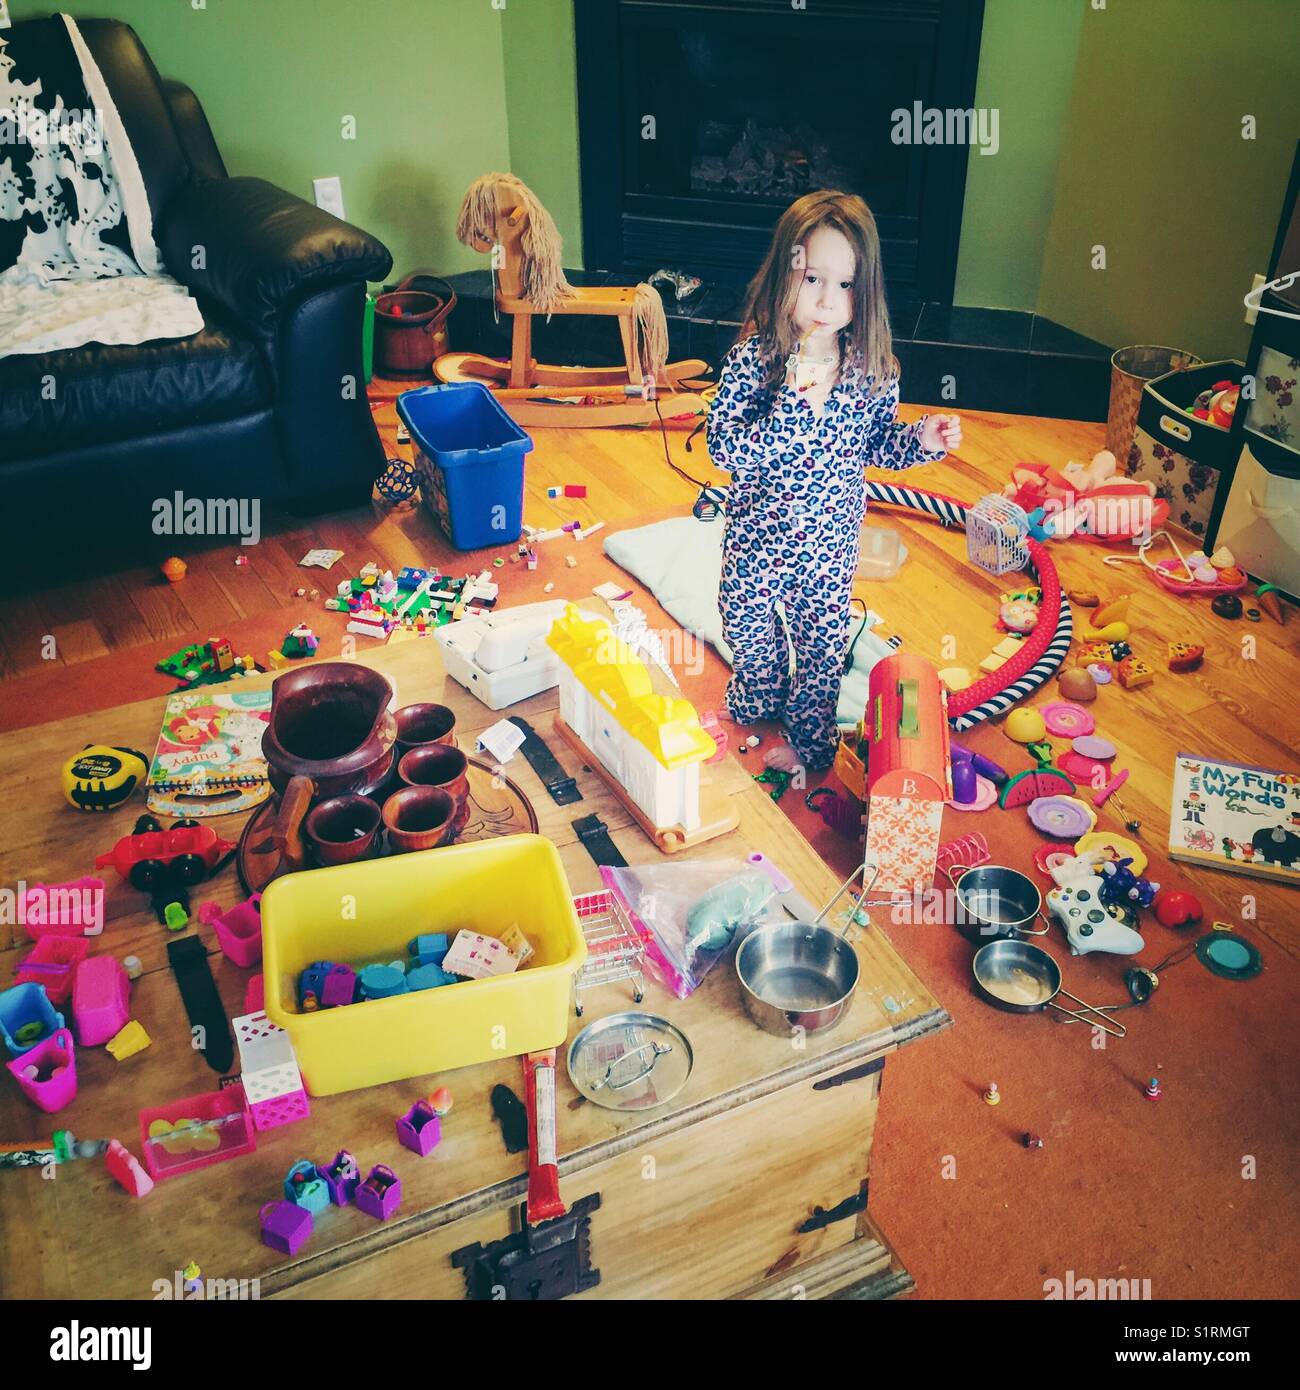 Jeune fille innocente à au milieu de l'énorme gâchis de jouets qu'elle a fait Banque D'Images